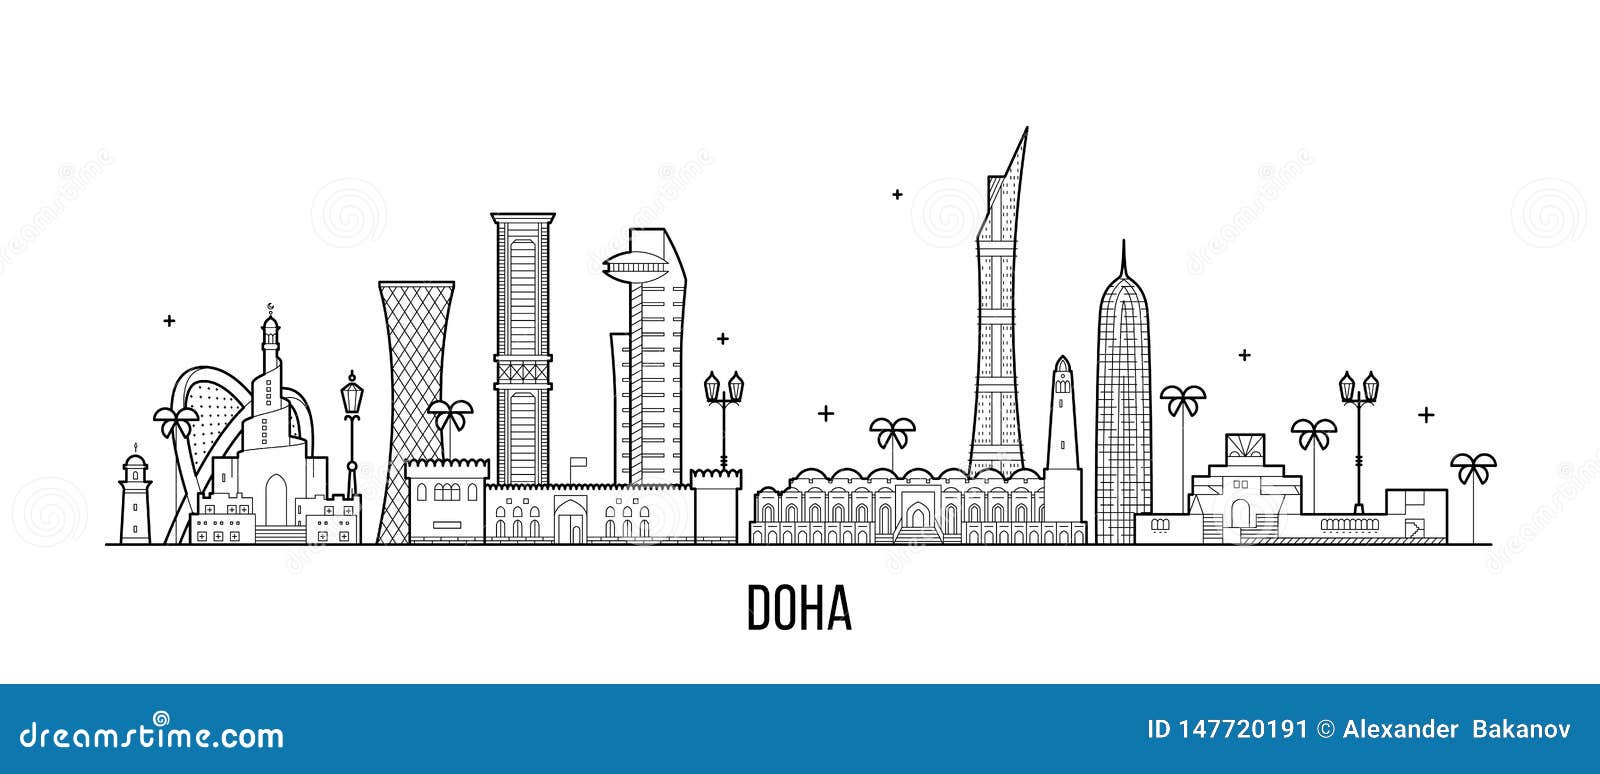 doha skyline qatar city buildings  linear